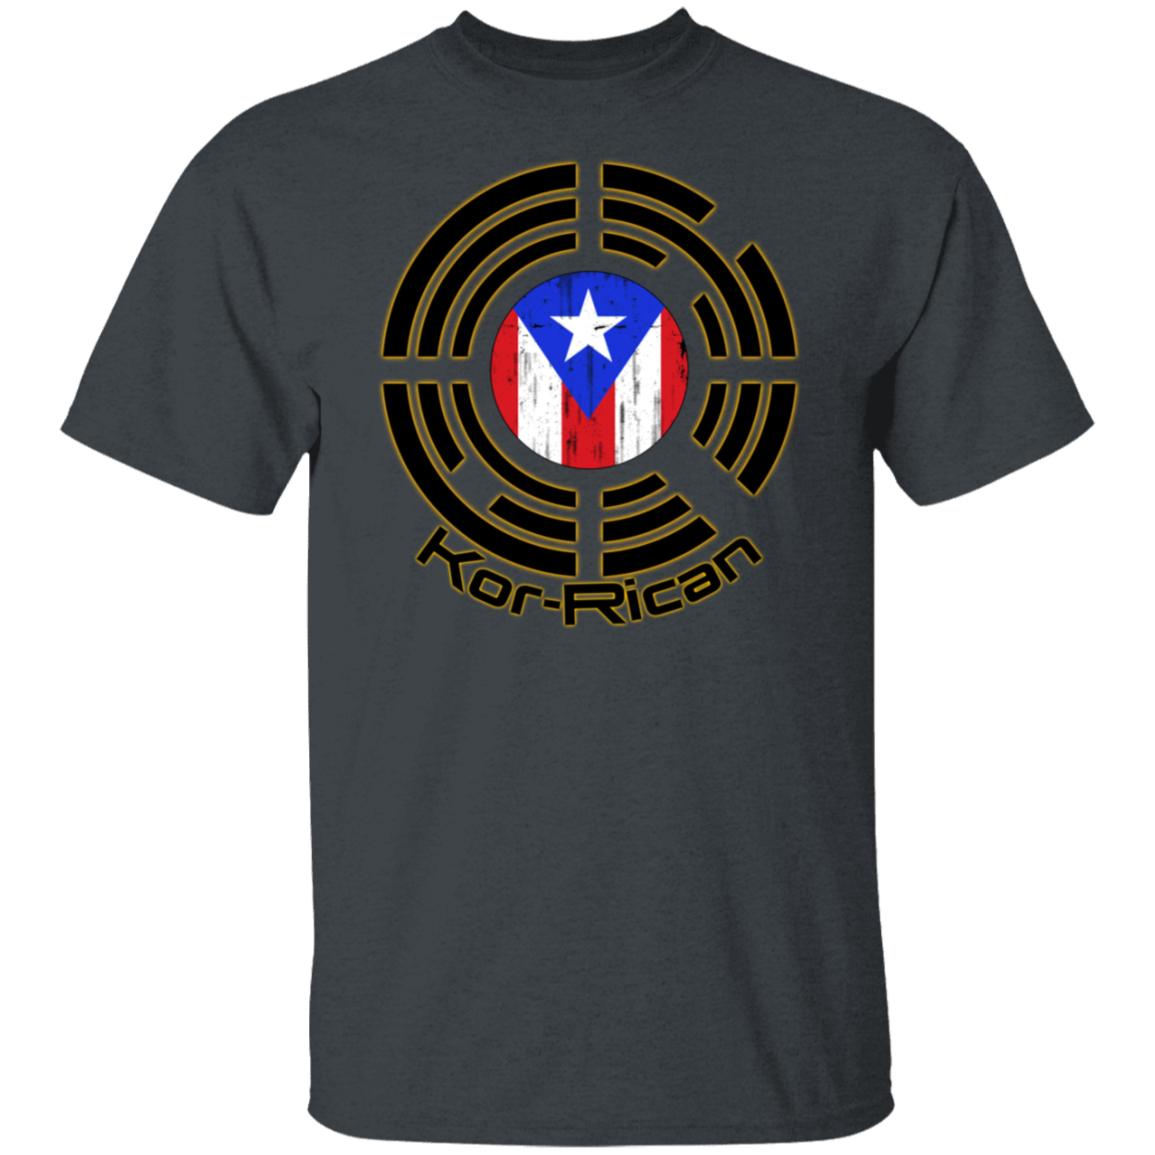 Kor-Rican #2 Unisex T-Shirt